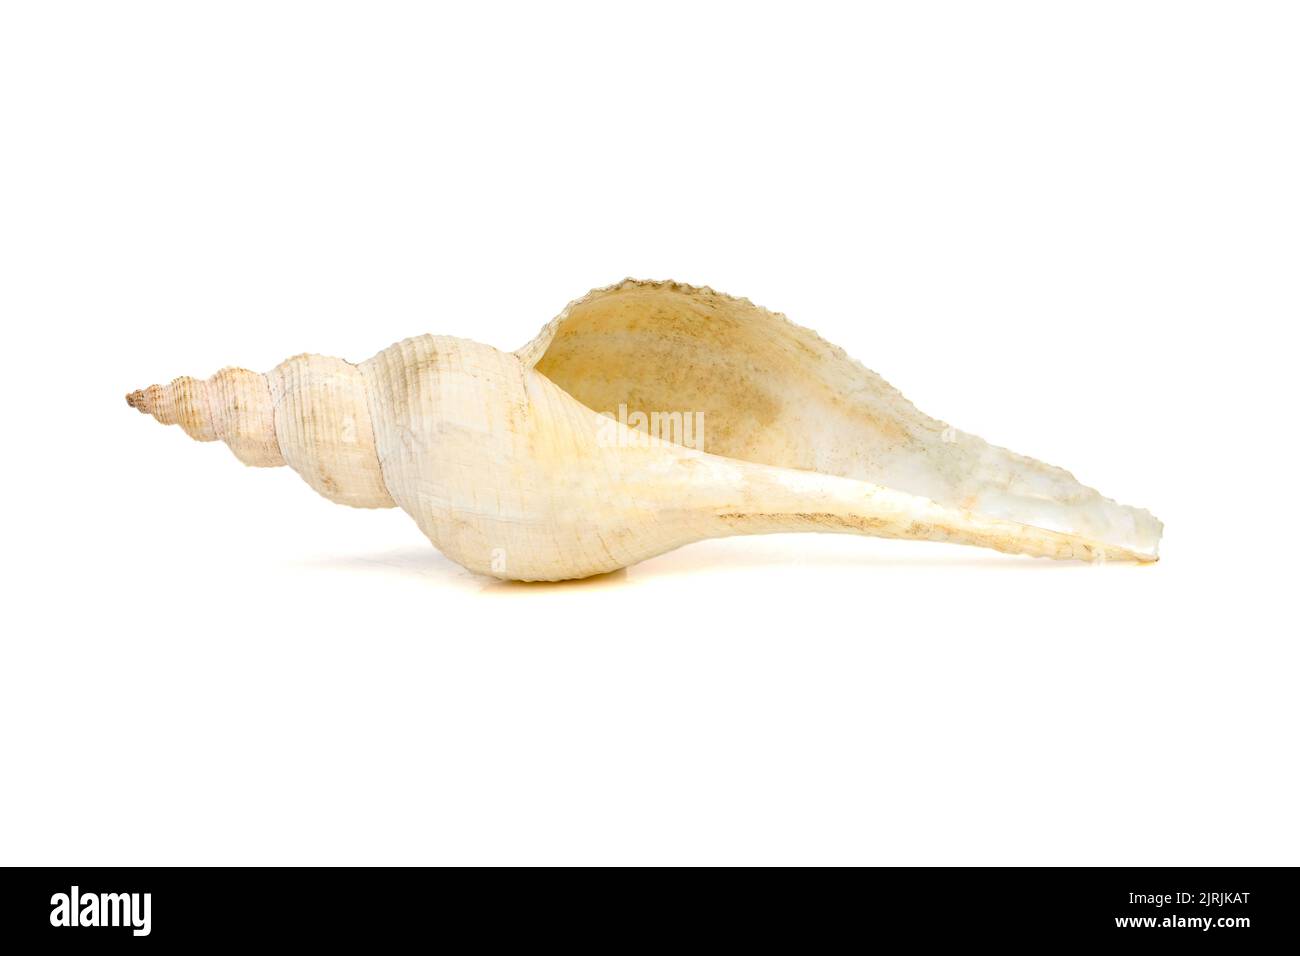 Immagine di conchiglie a coda lunga bianche su sfondo bianco. Animali sottomarini. Conchiglie di mare. Foto Stock